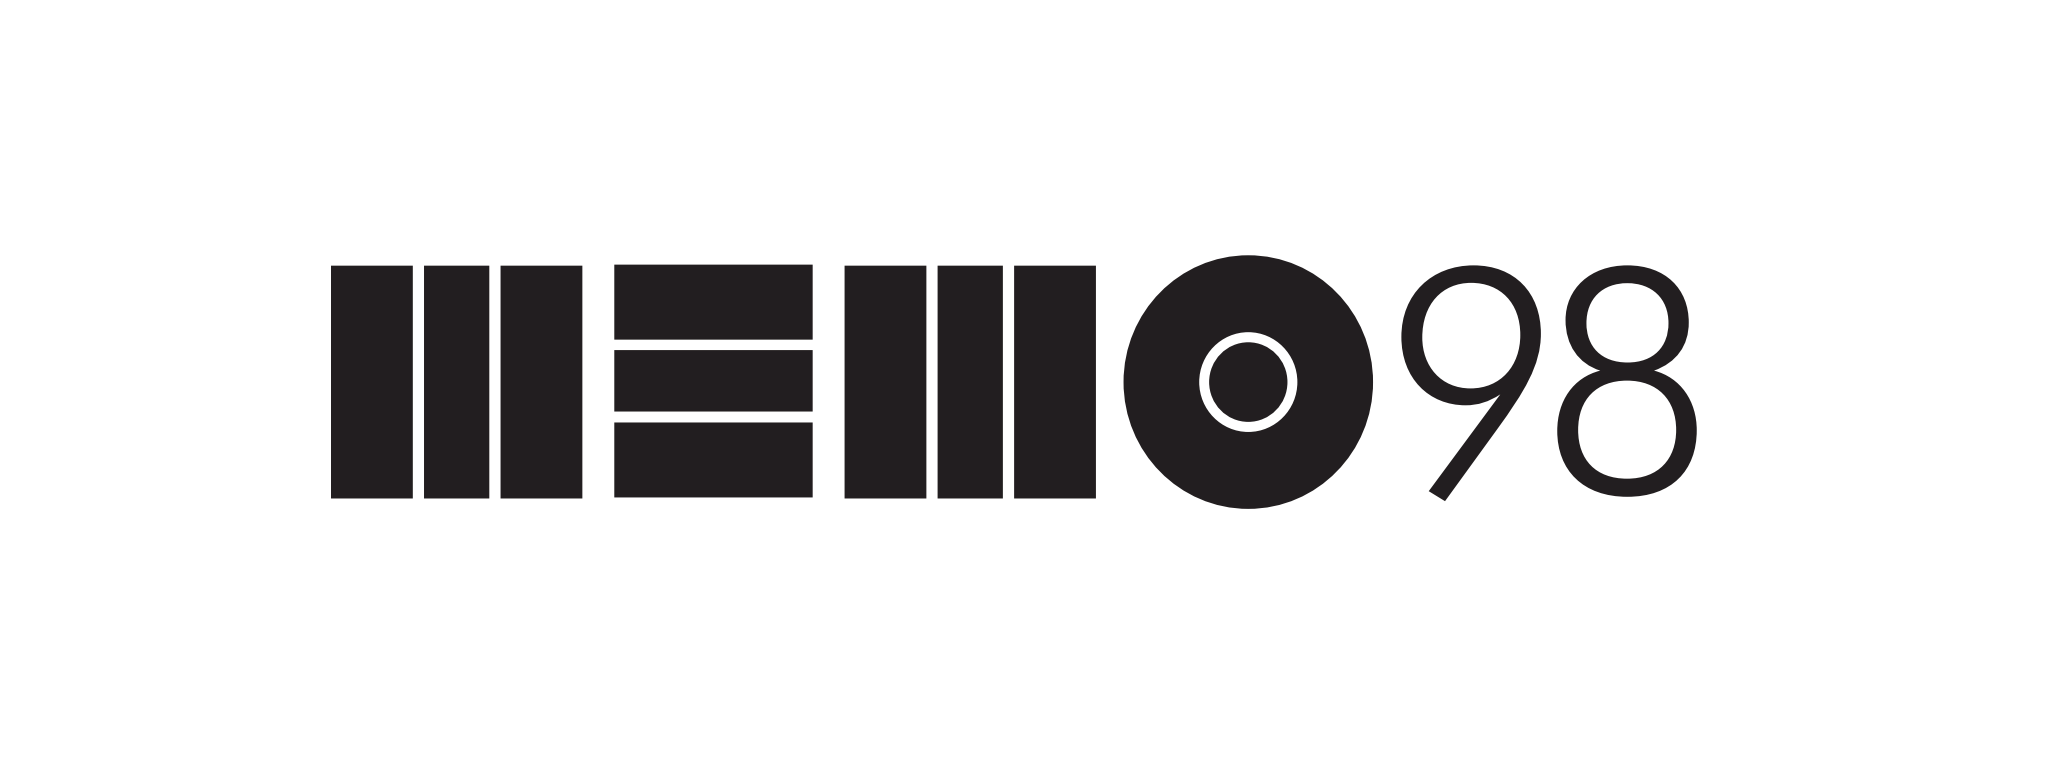 m98_logo